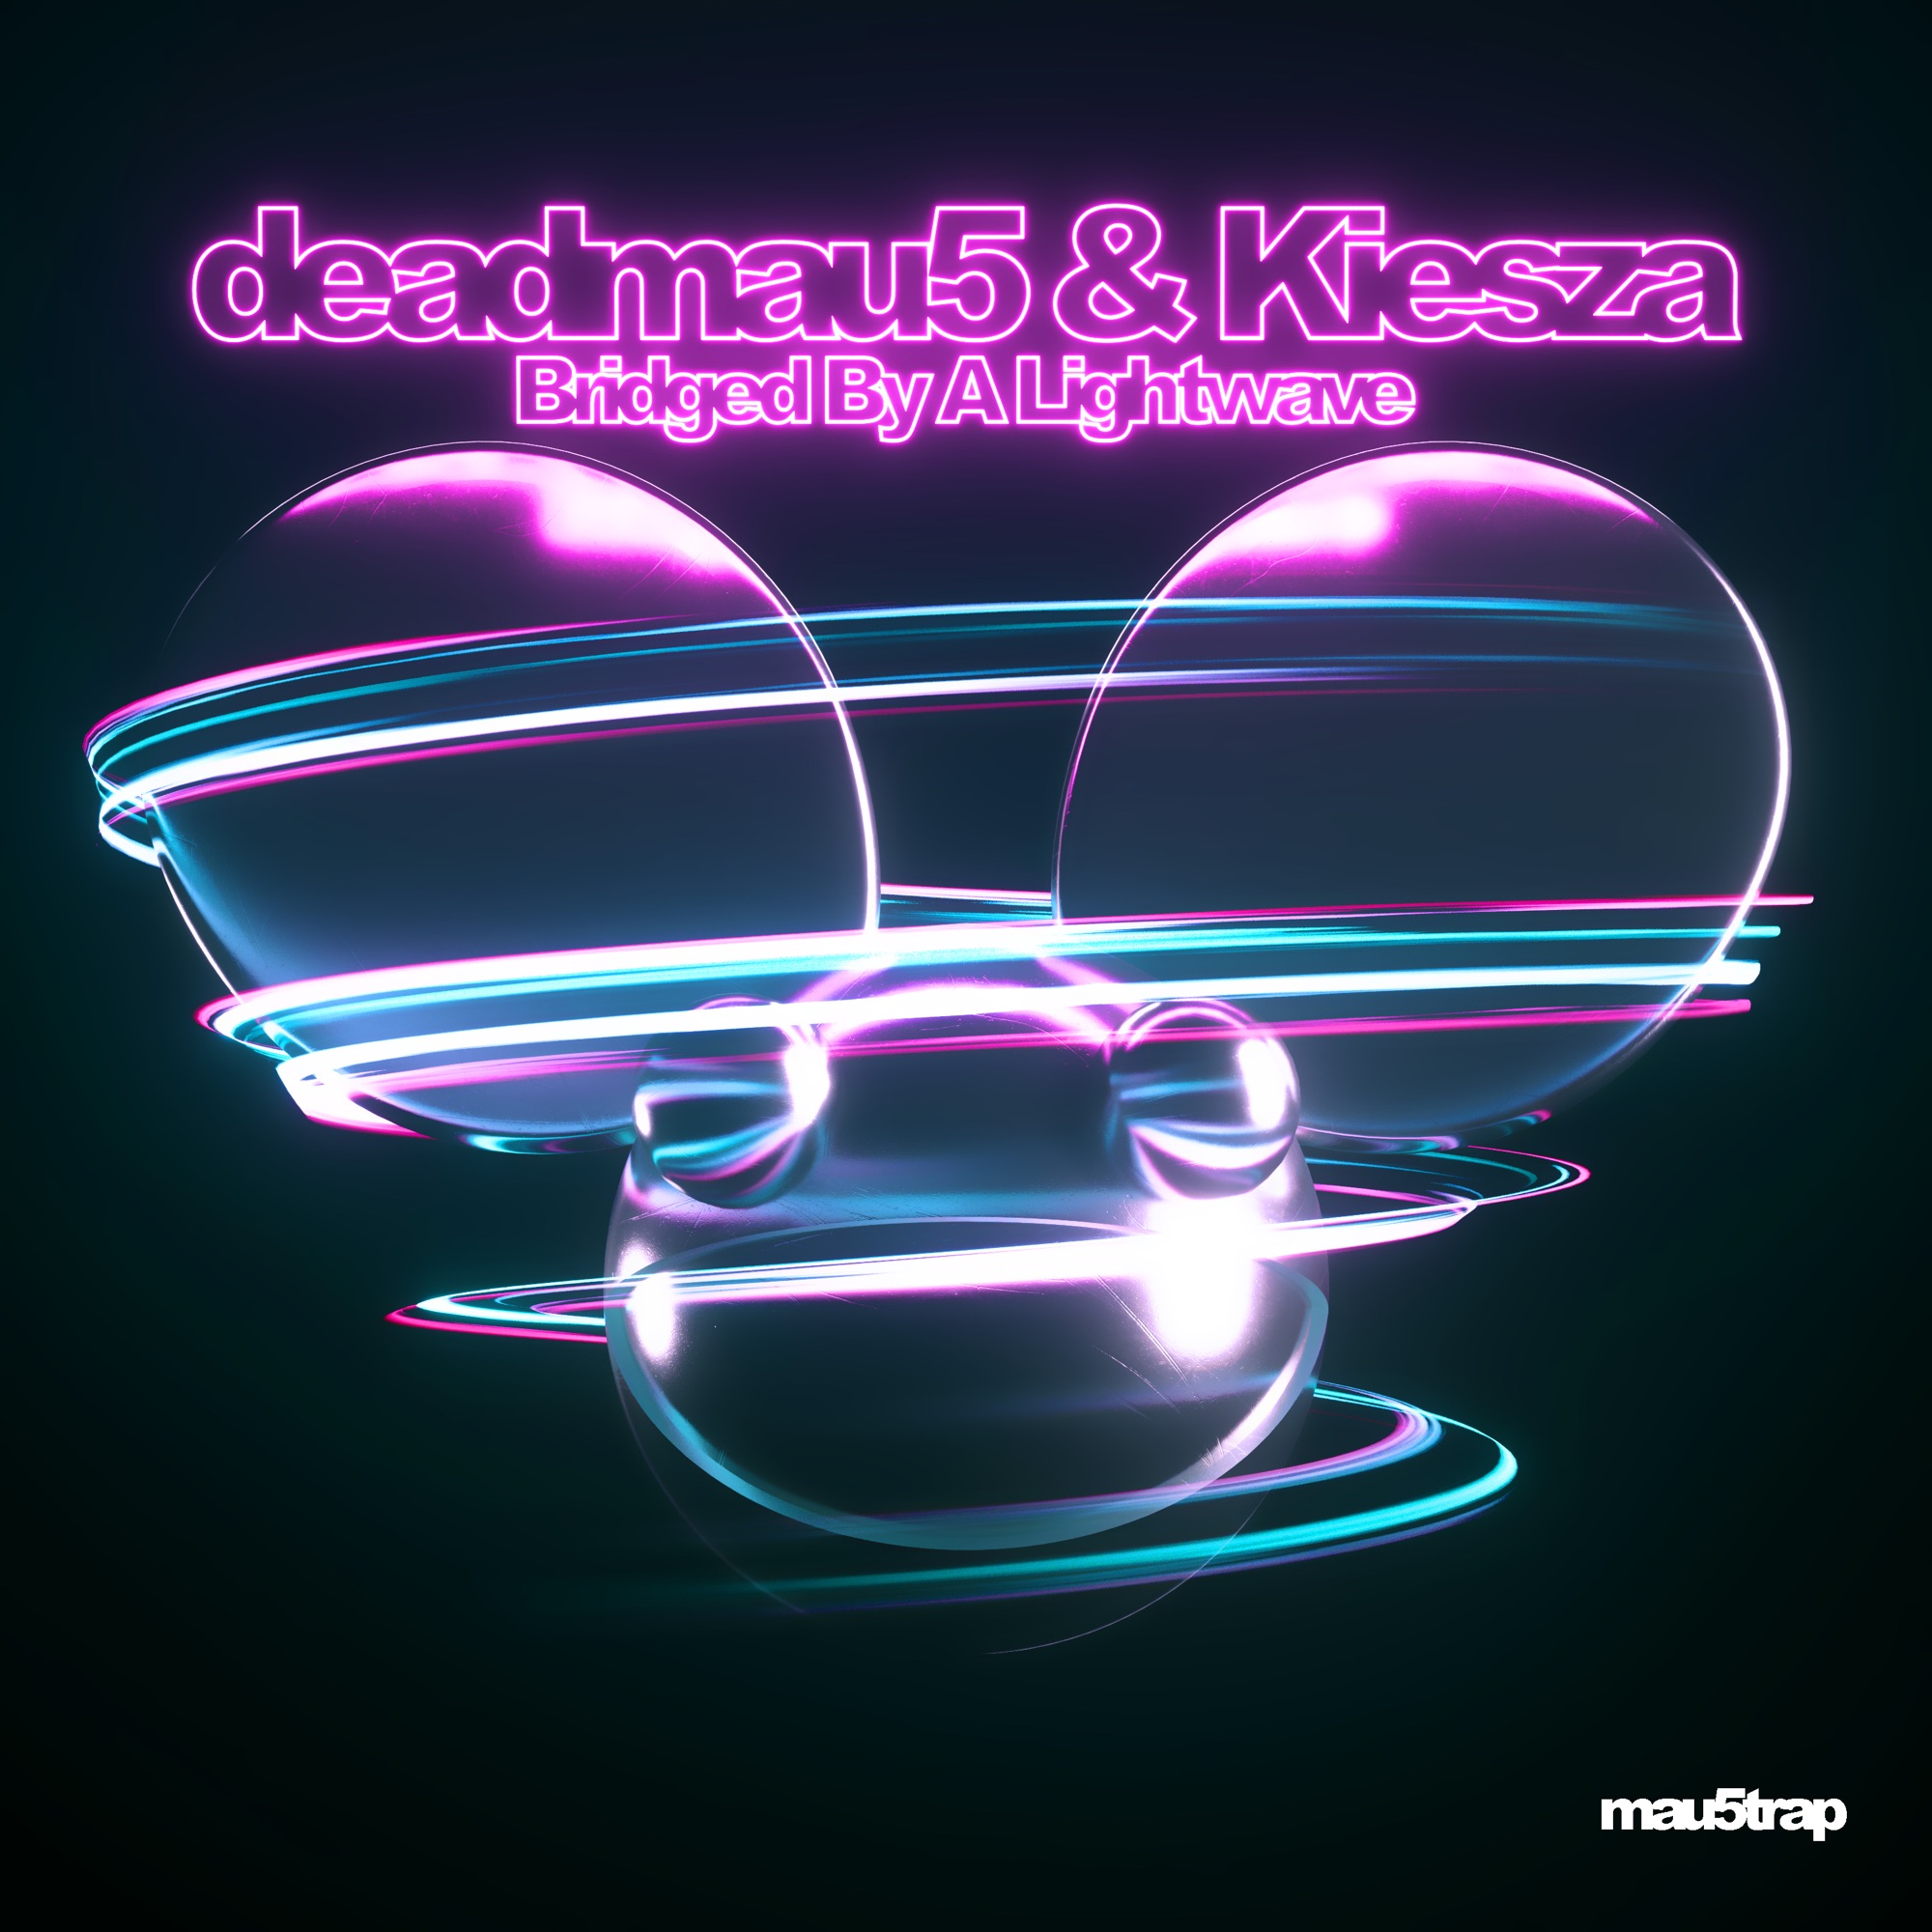 deadmau5 & Kiesza - Bridged By a Lightwave - Single